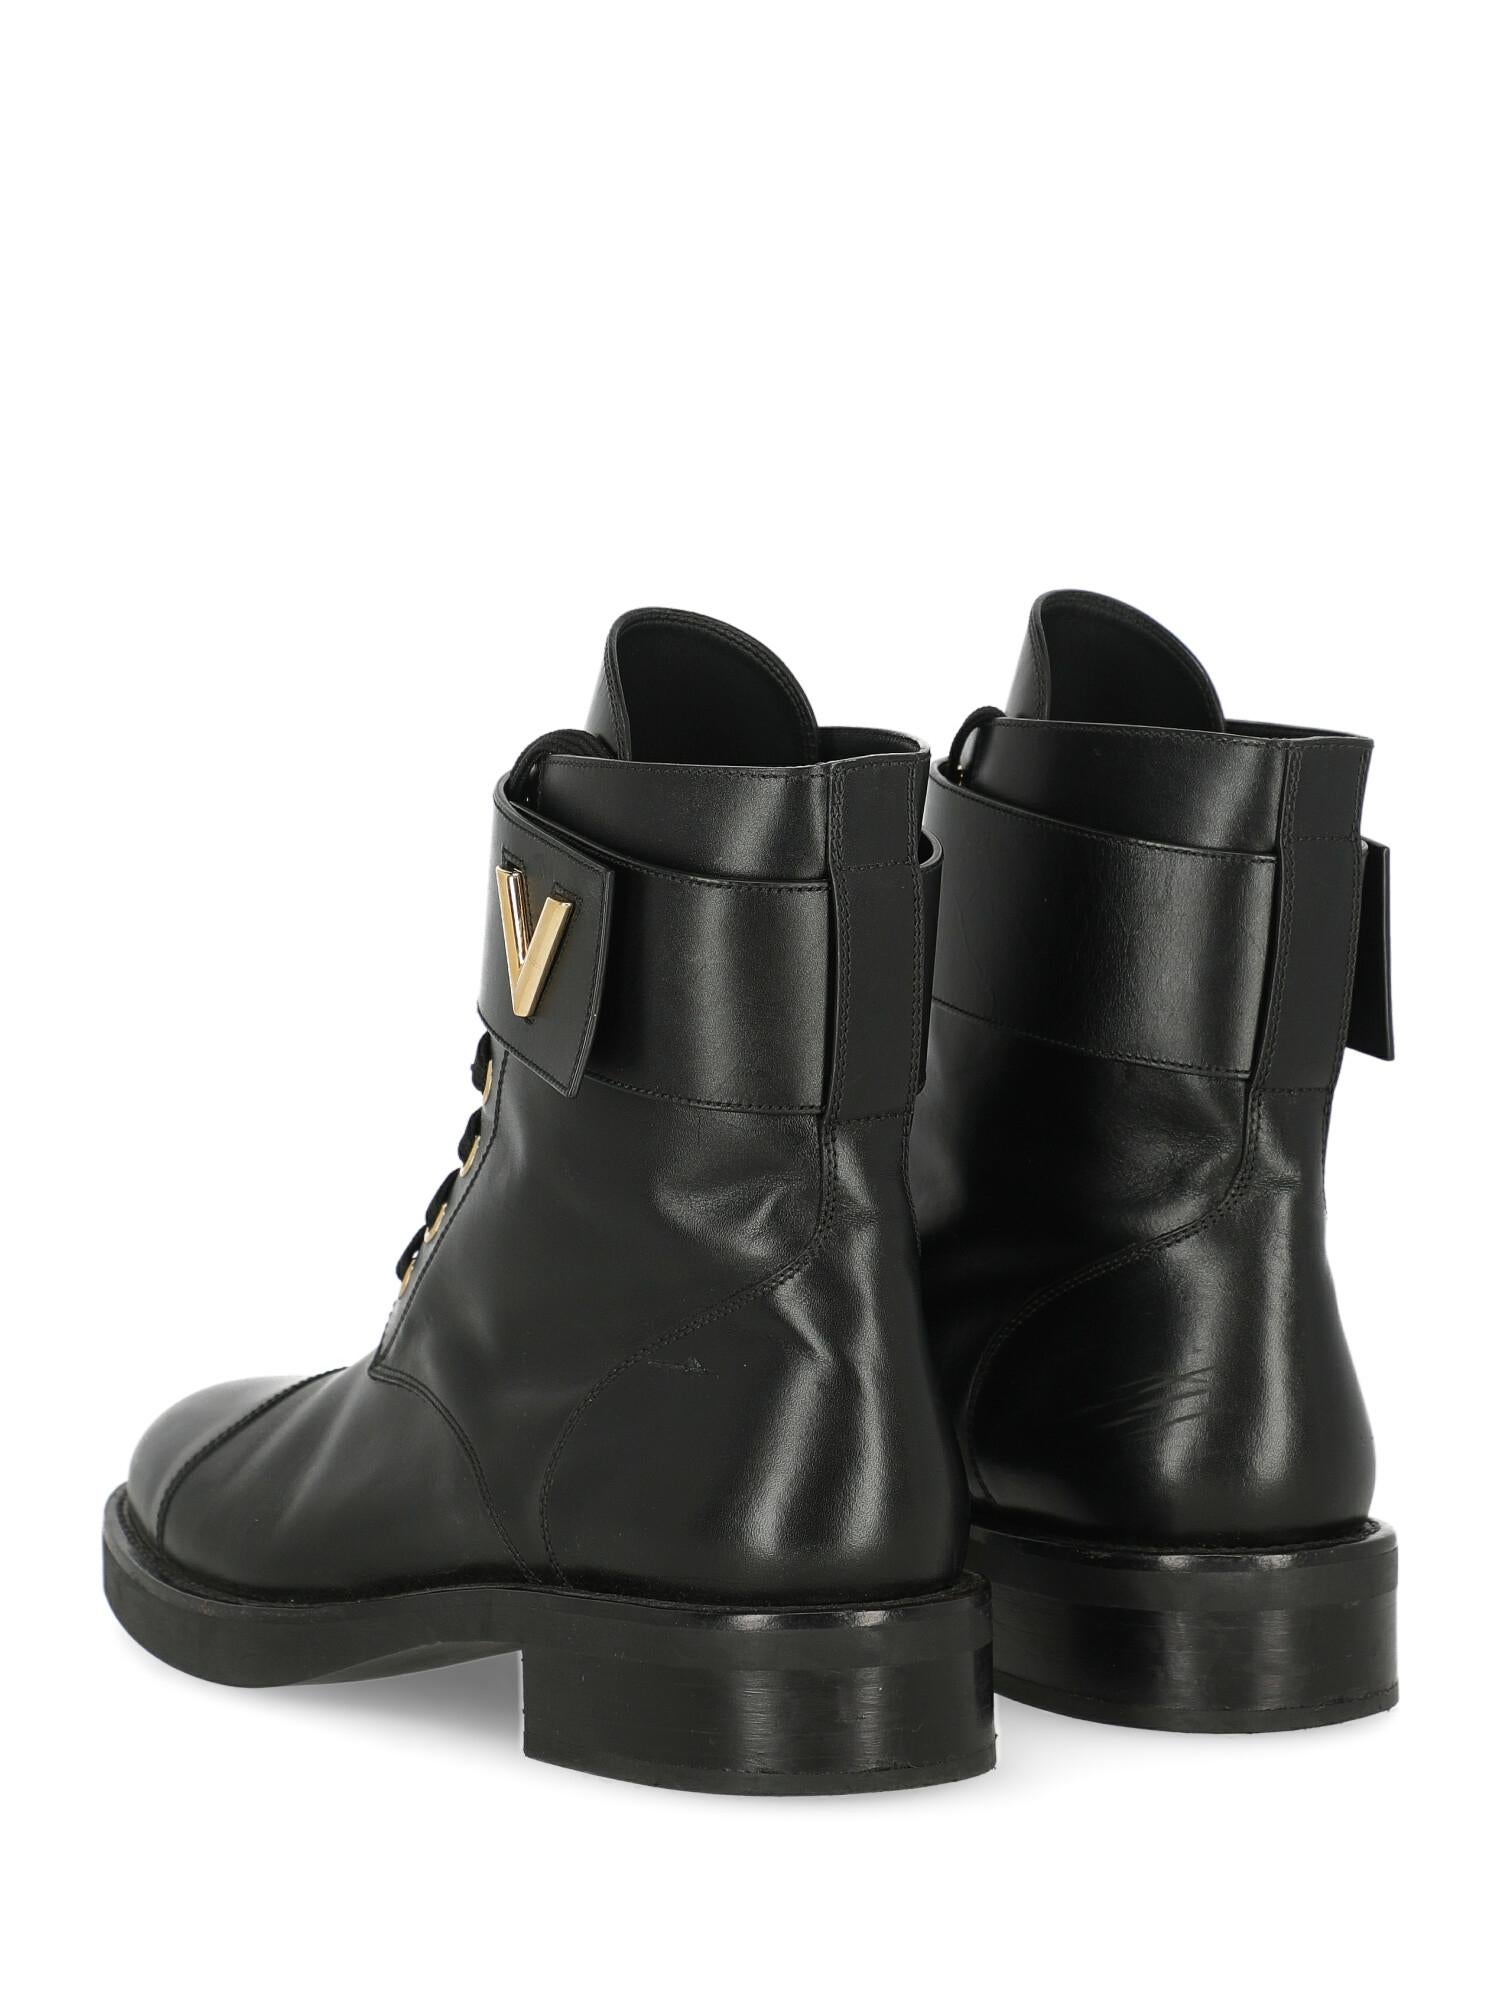 Women's Louis Vuitton Woman Ankle boots Black Leather IT 40